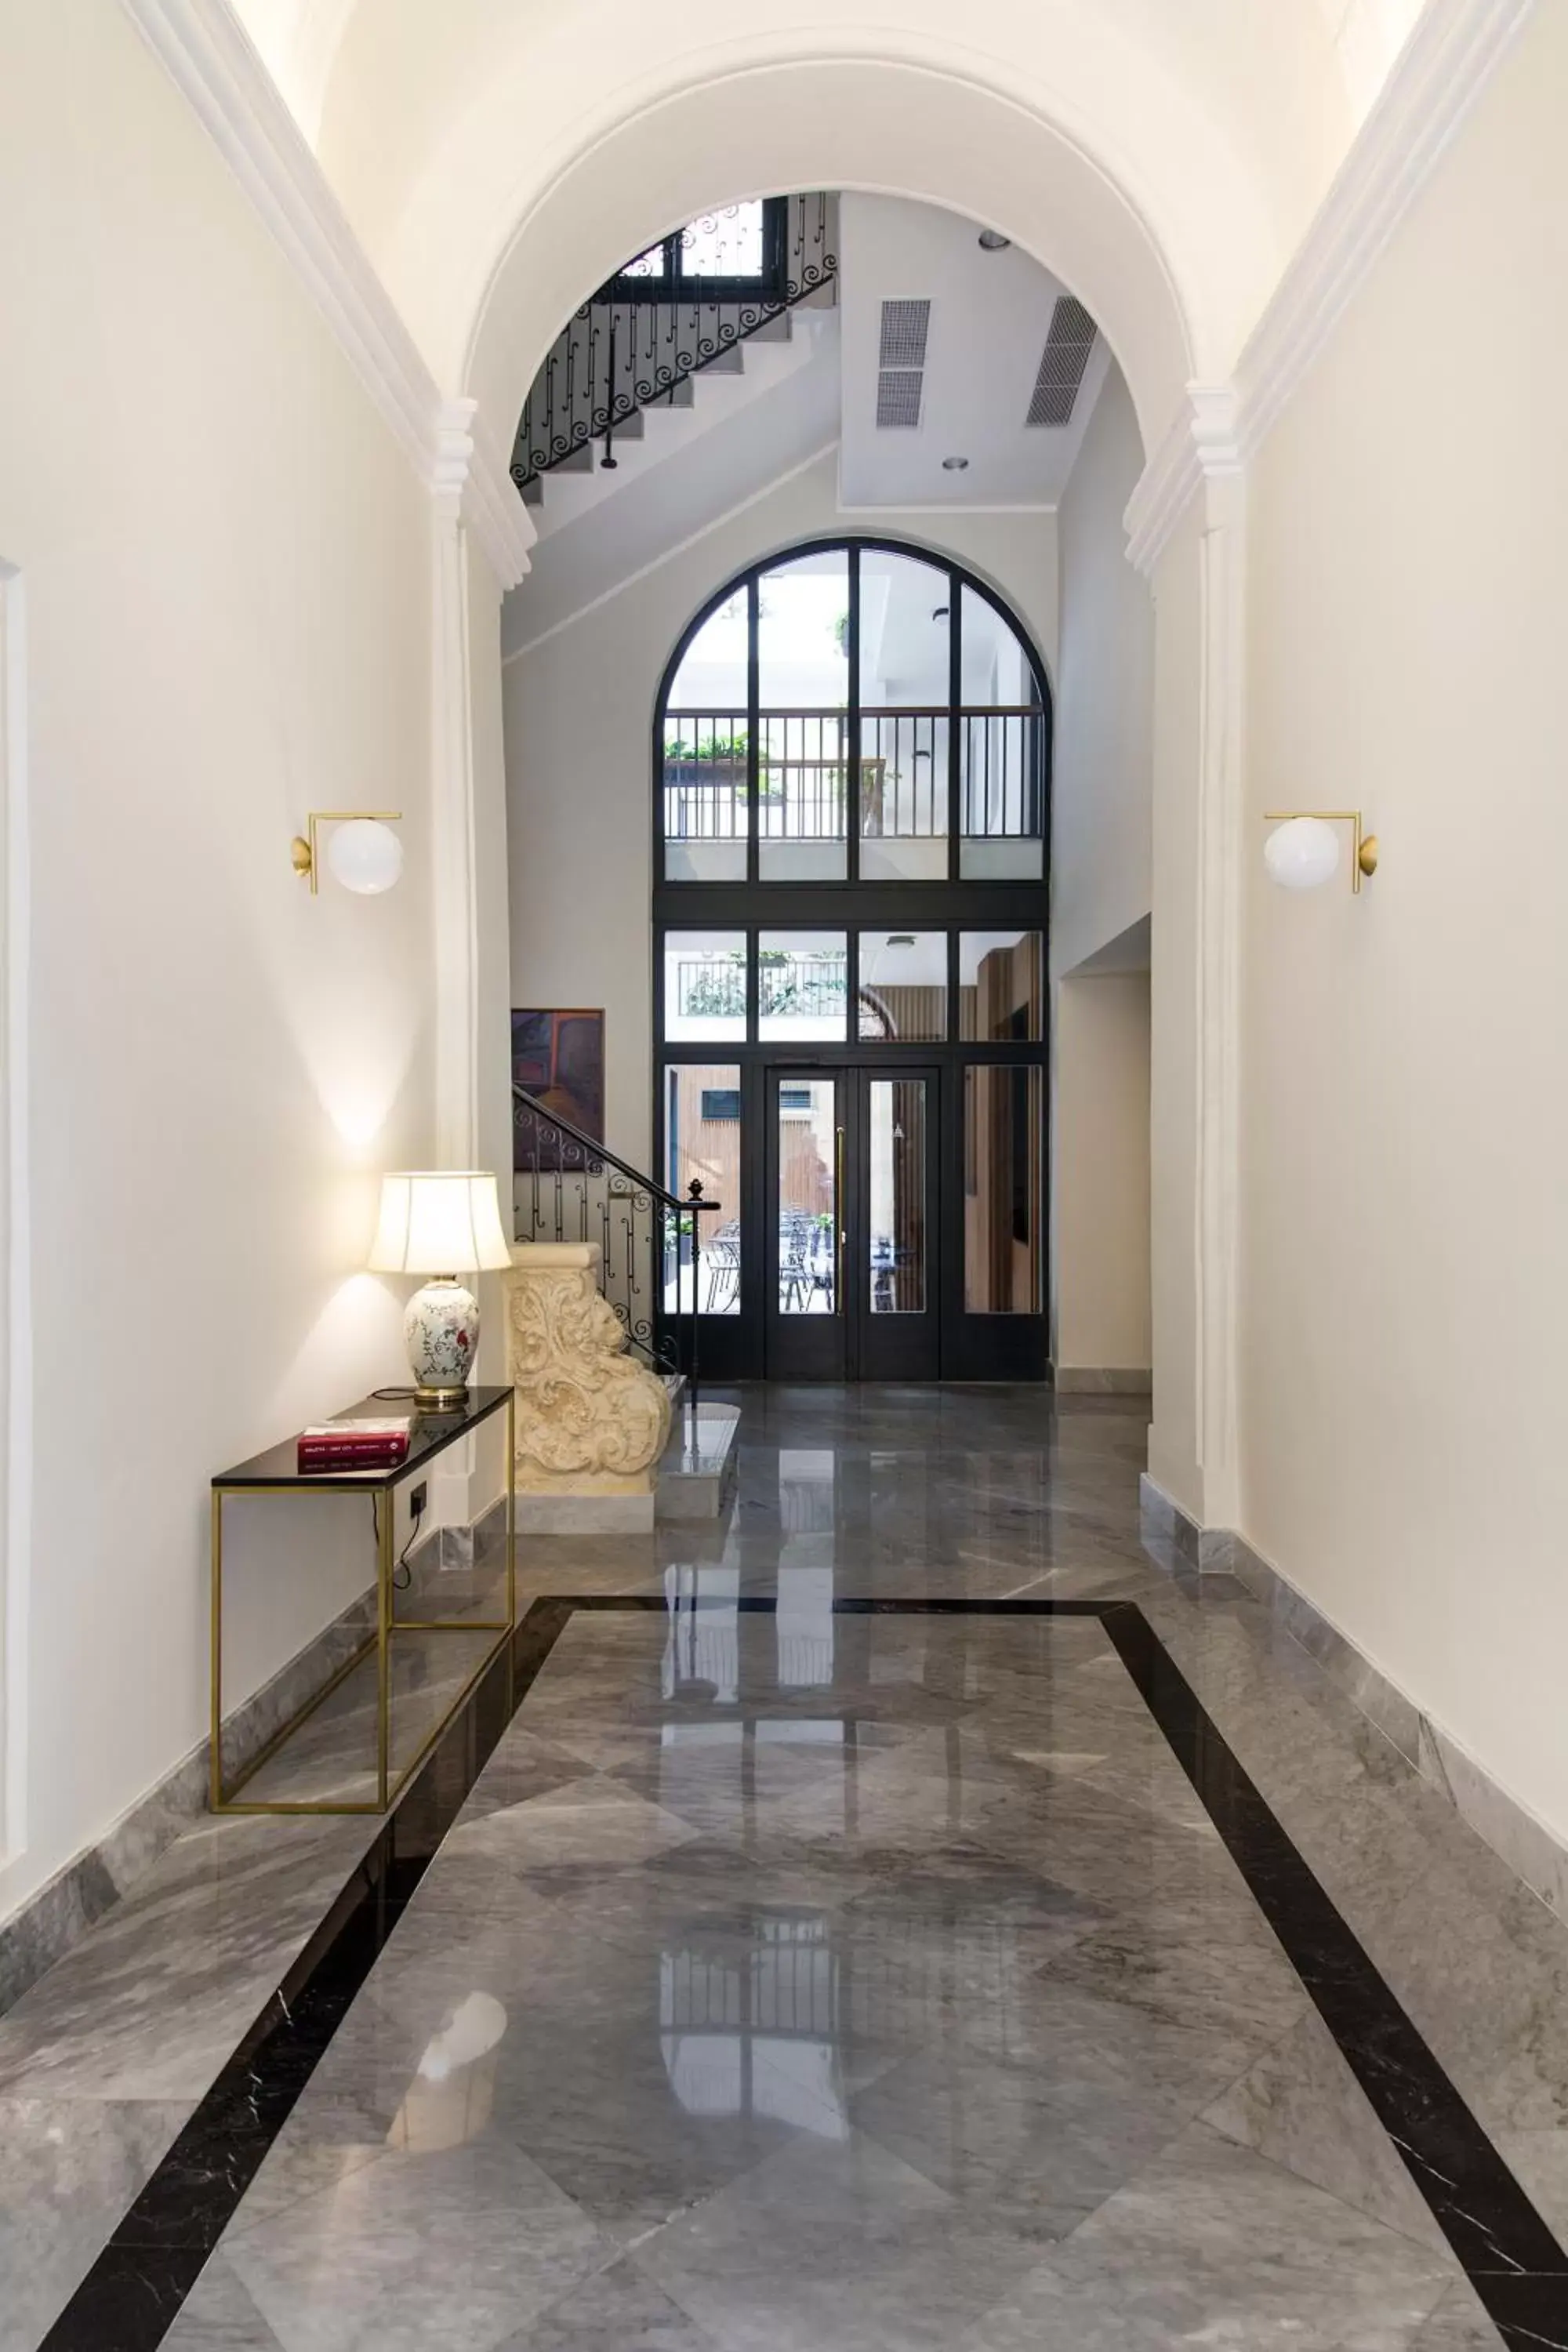 Facade/entrance in La Falconeria Hotel